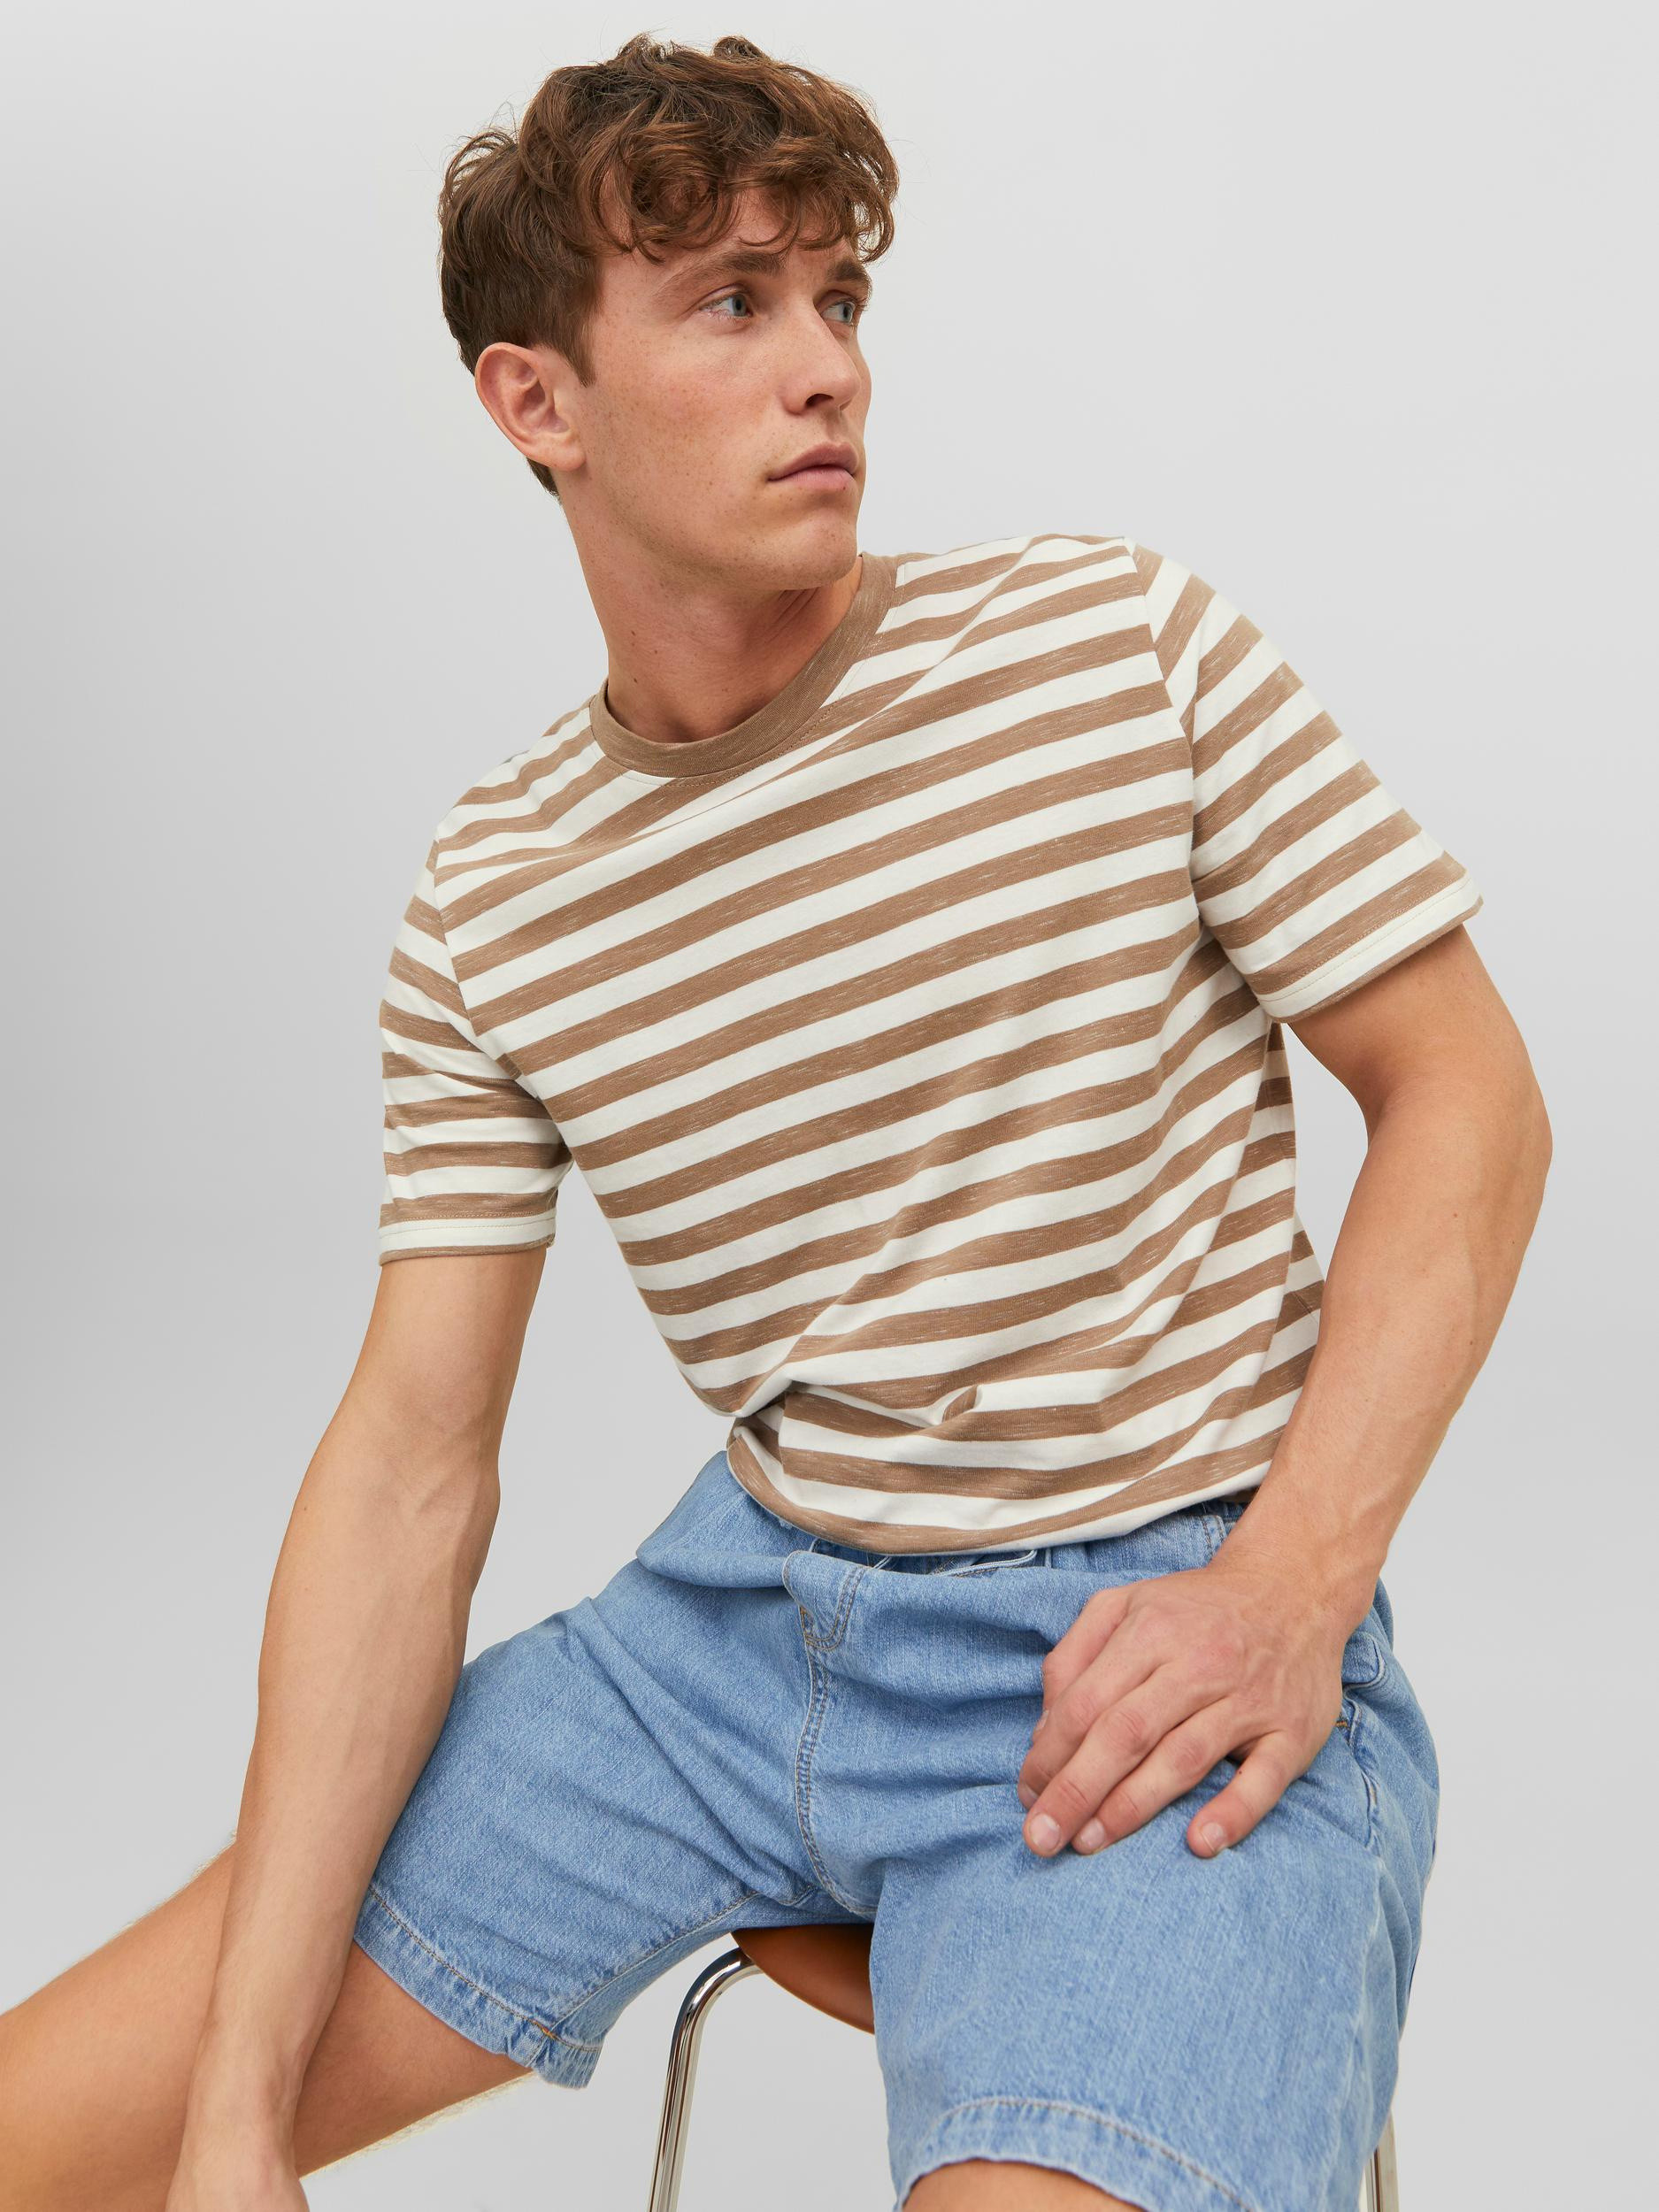 Jack & Jones - Striped T-Shirt, Beige, large image number 2